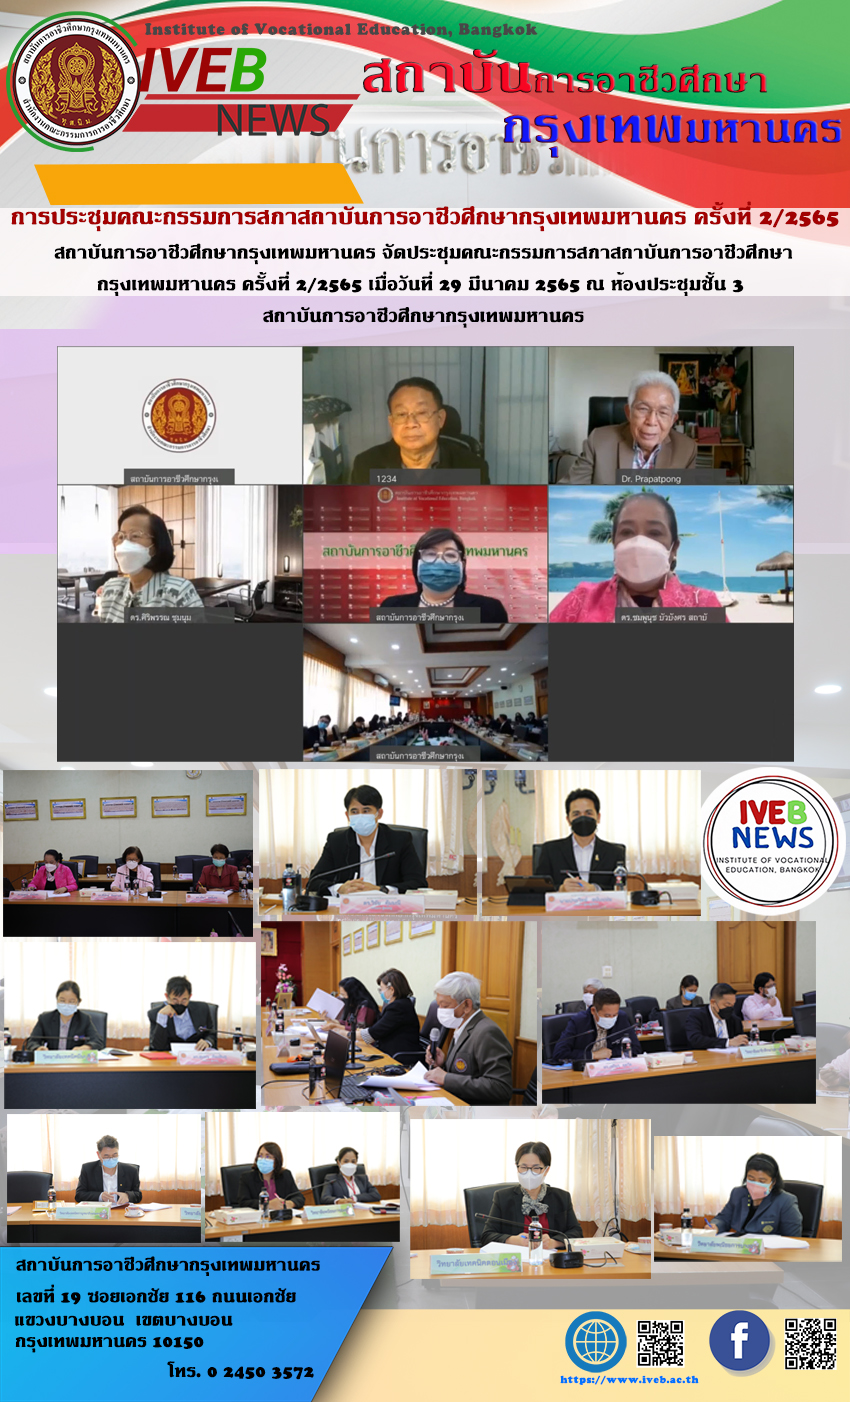 สถาบันการอาชีวศึกษากรุงเทพมหานคร จัดประชุมคณะกรรมการสภาสถาบันการอาชีวศึกษากรุงเทพมหานคร ครั้งที่ 2/2565